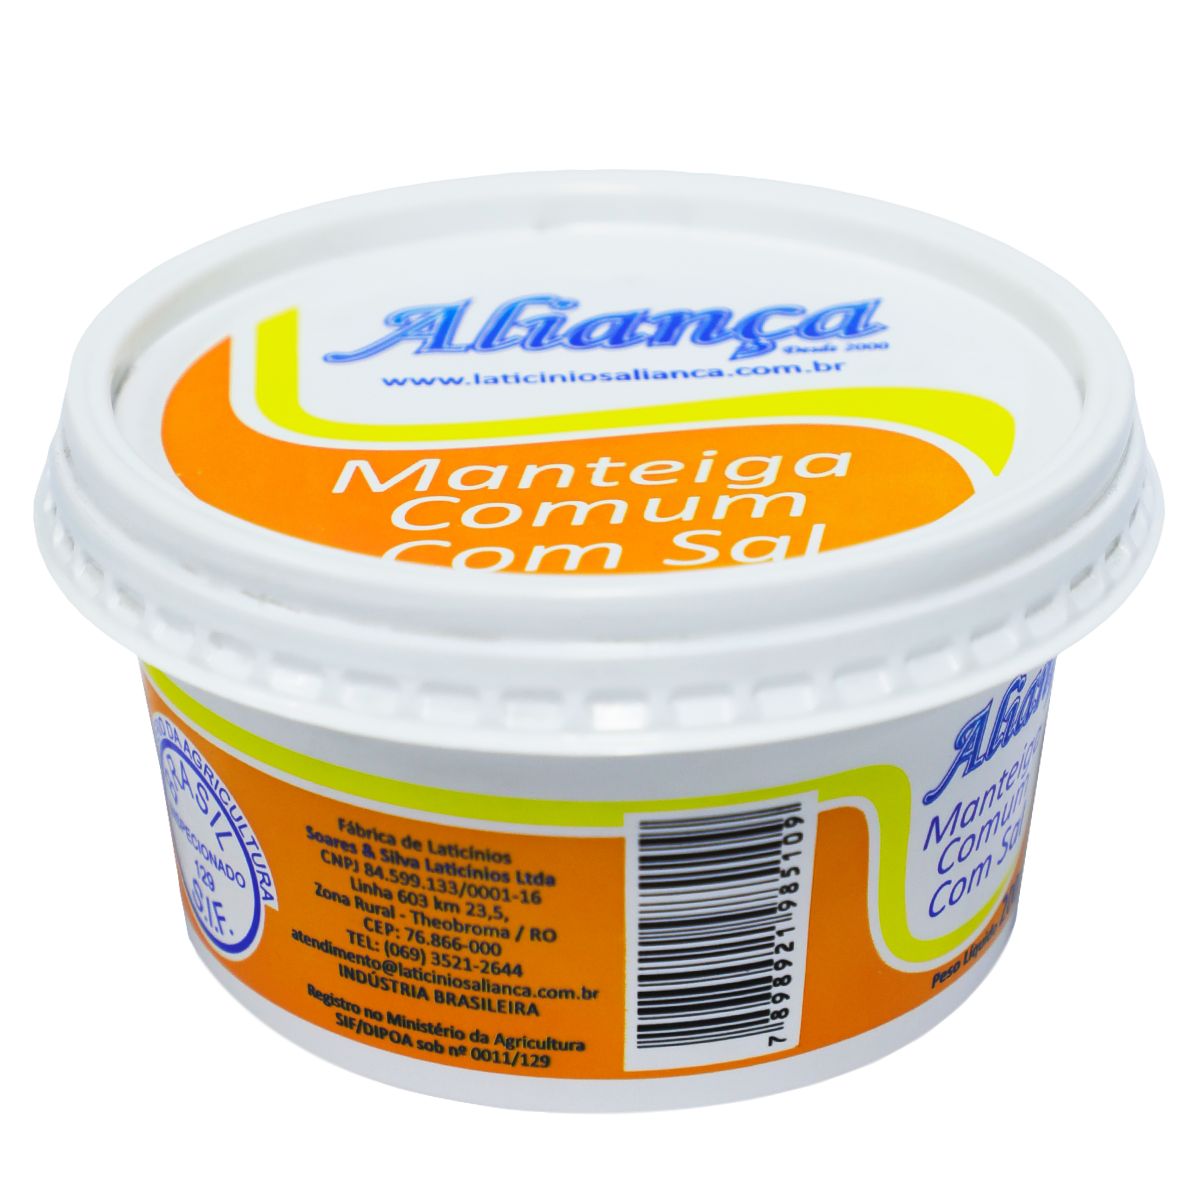 Manteiga Comum Aliança com Sal 200g image number 1